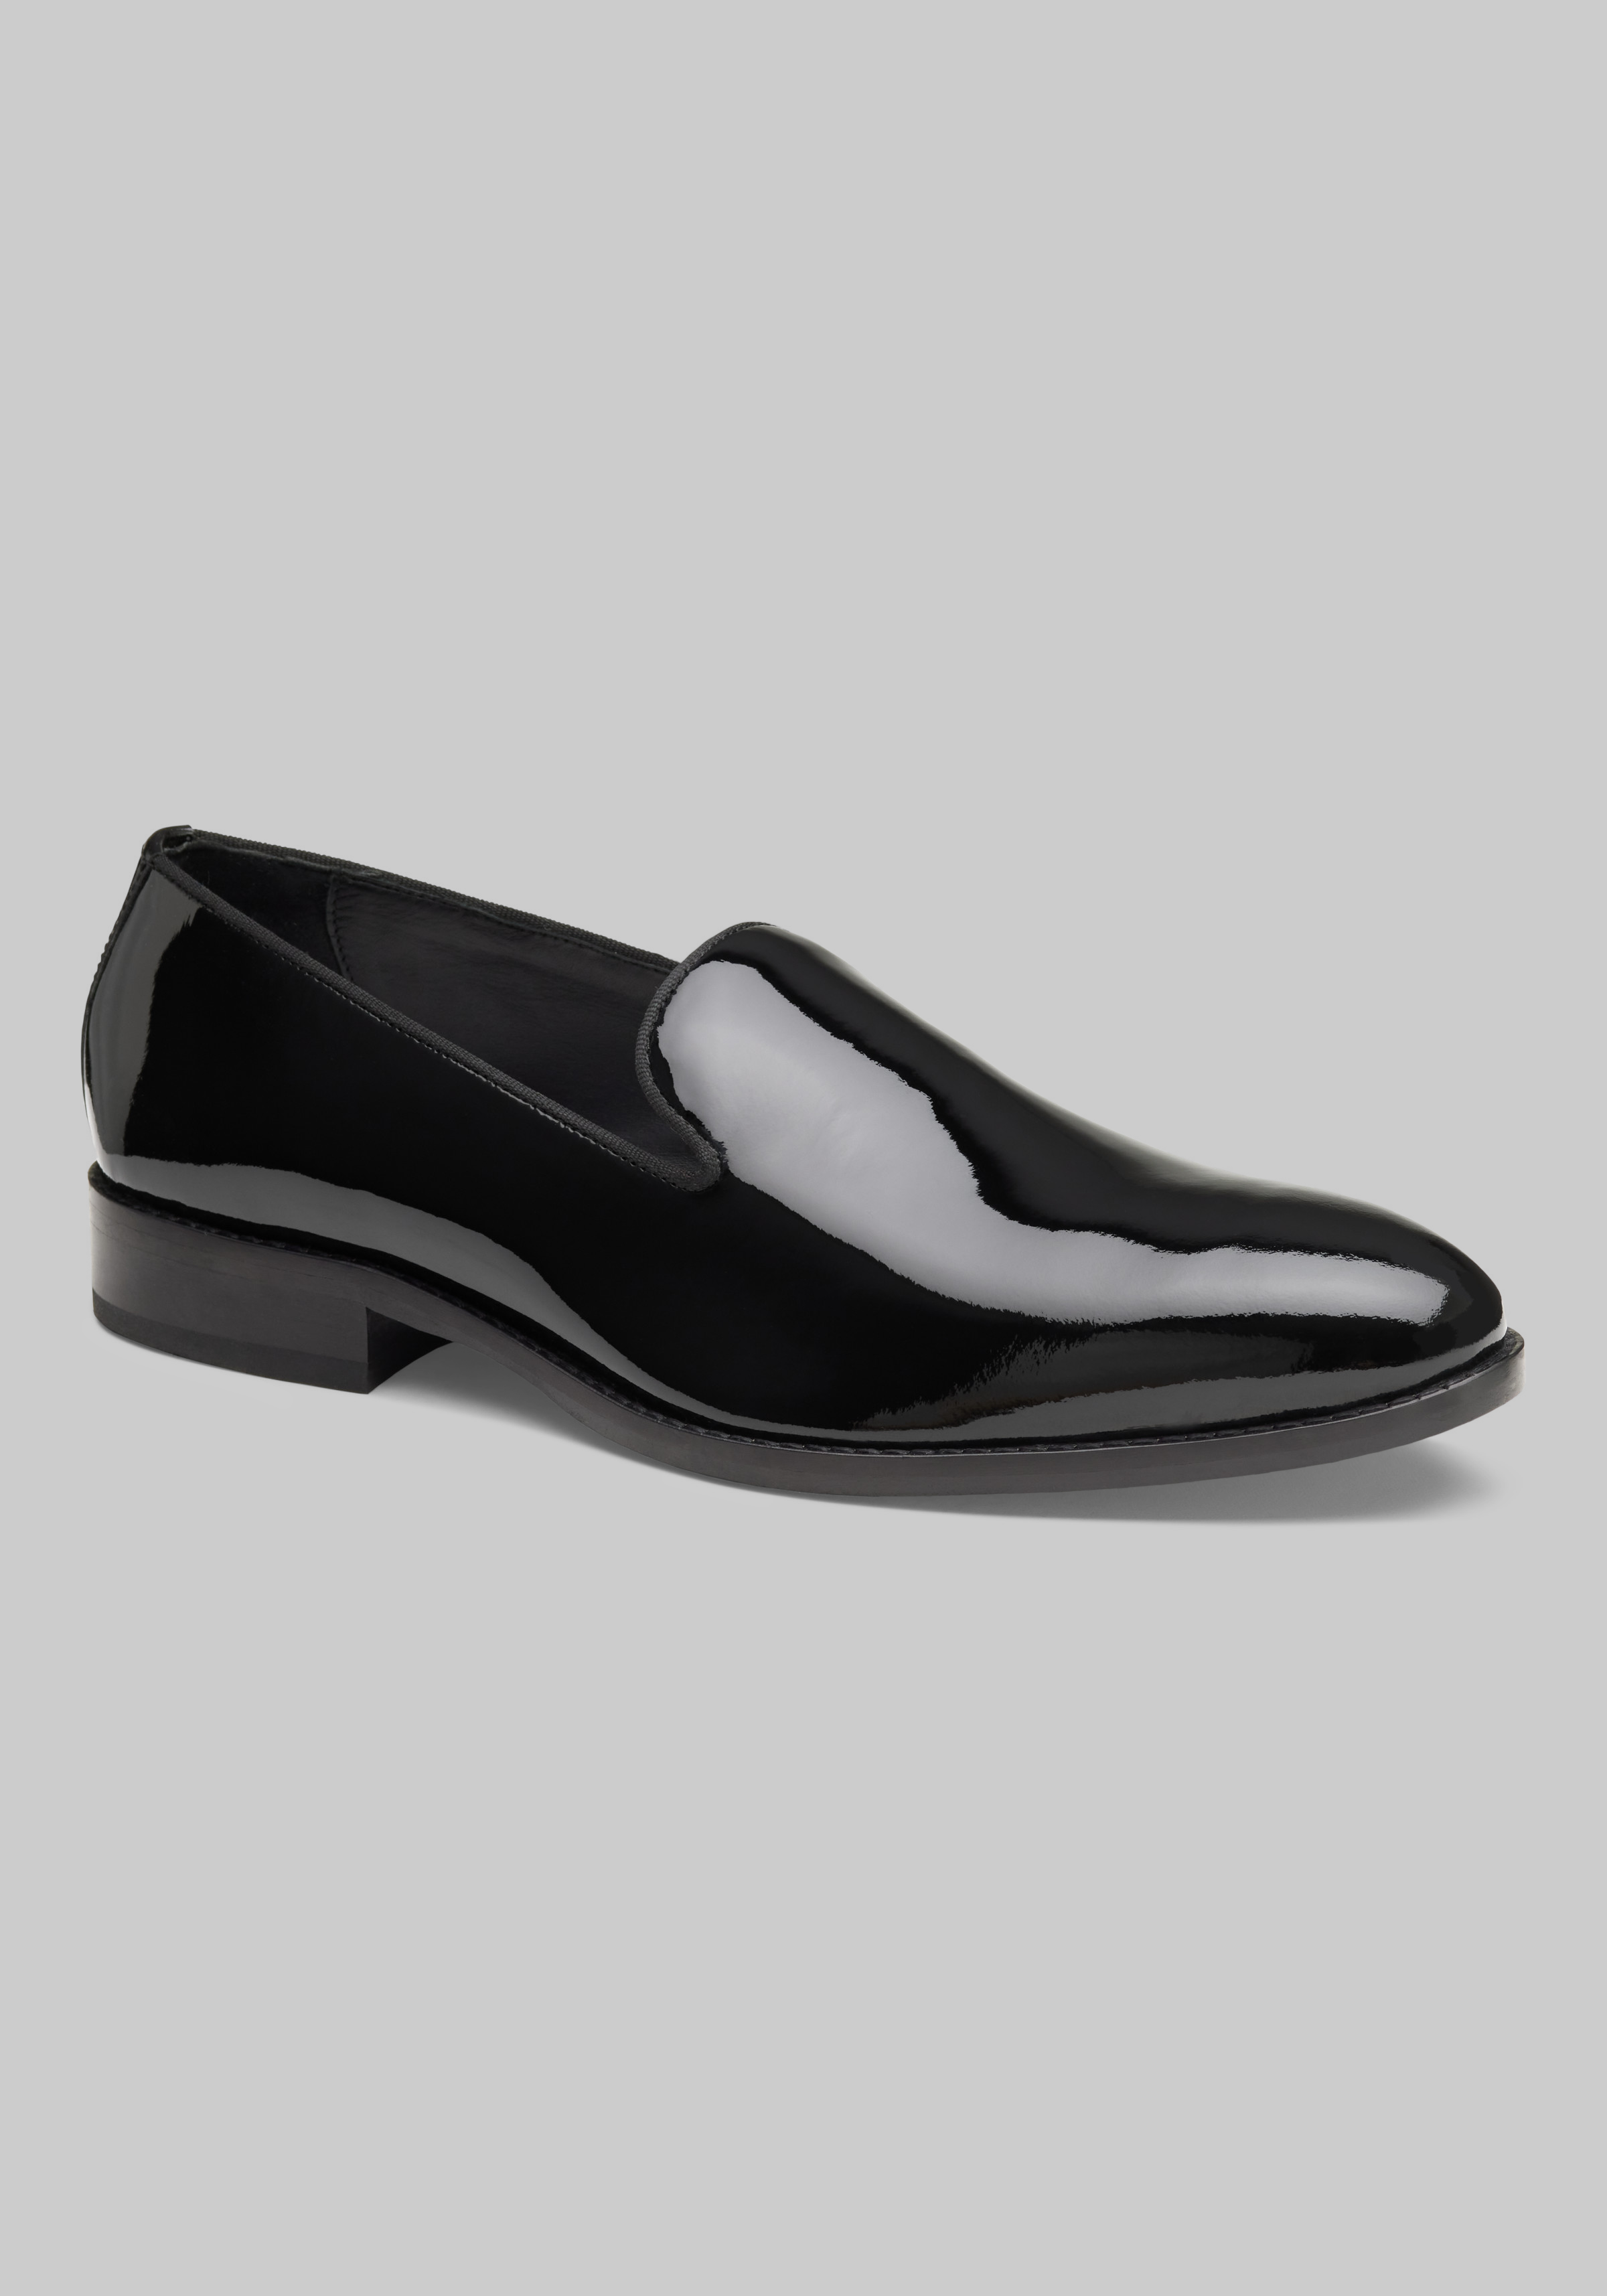 Joseph Abboud Men's Soiree Patent Leather Dress Shoes